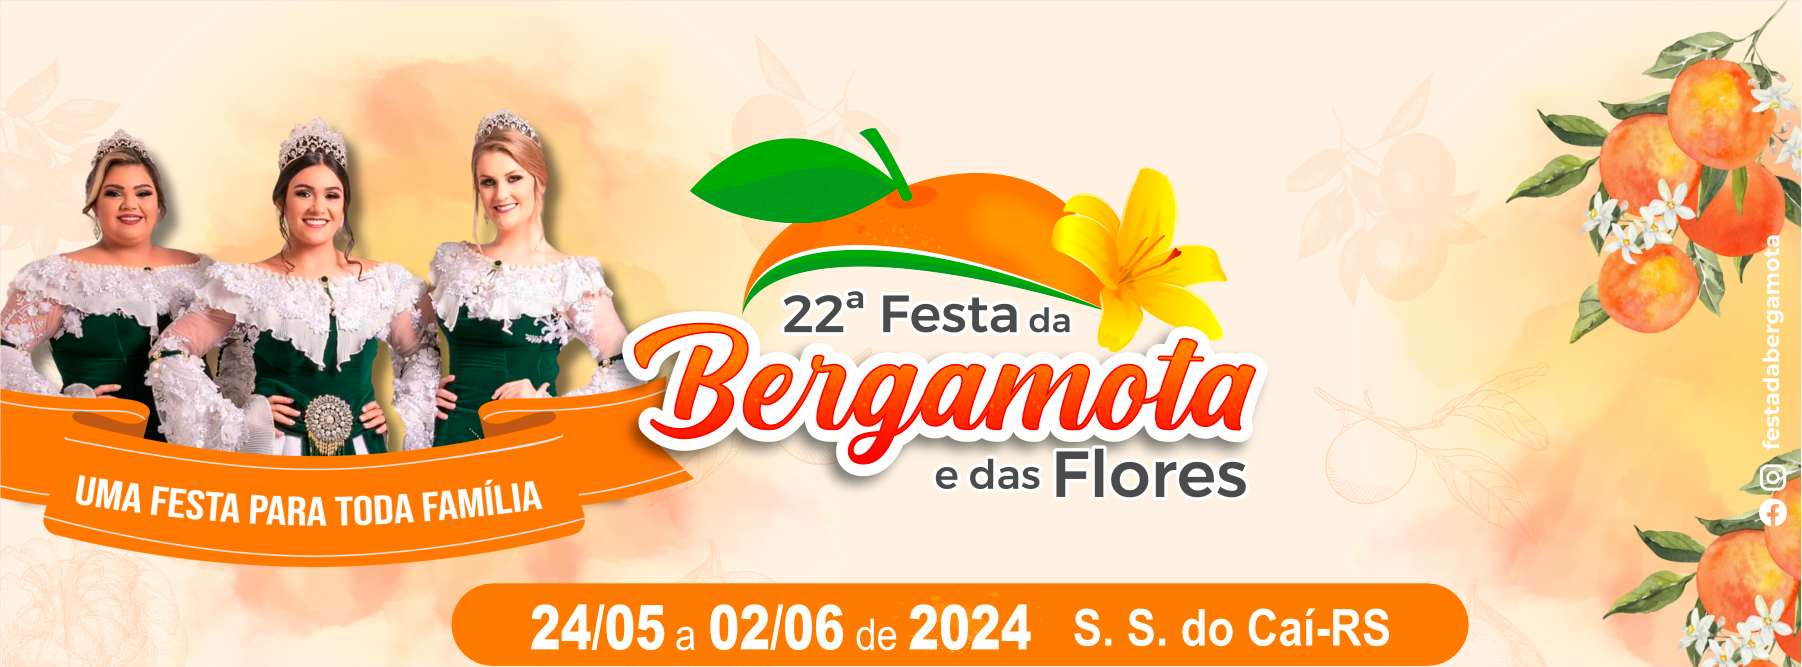 COMUNICADO - 22ª Festa da Bergamota e das Flores de São Sebastião do Caí/RS